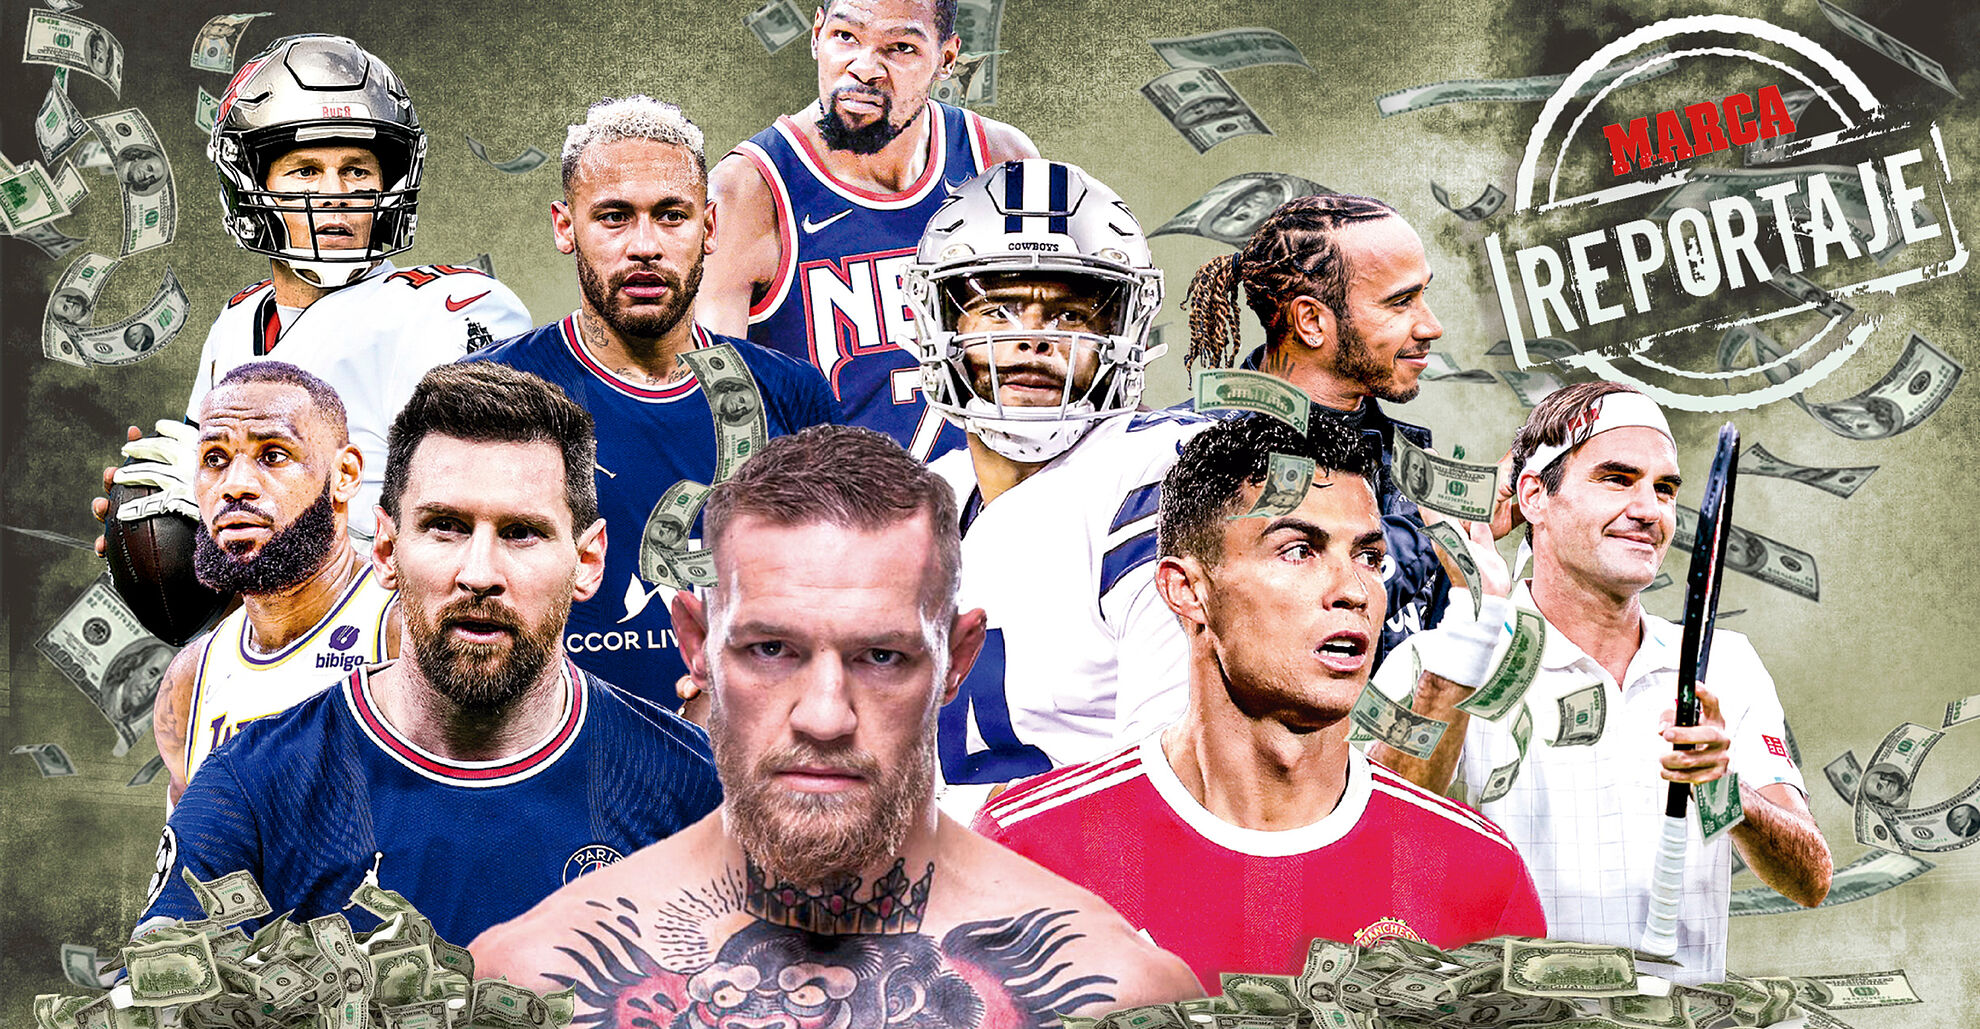  Estos son los diez deportistas mejor pagados del mundo